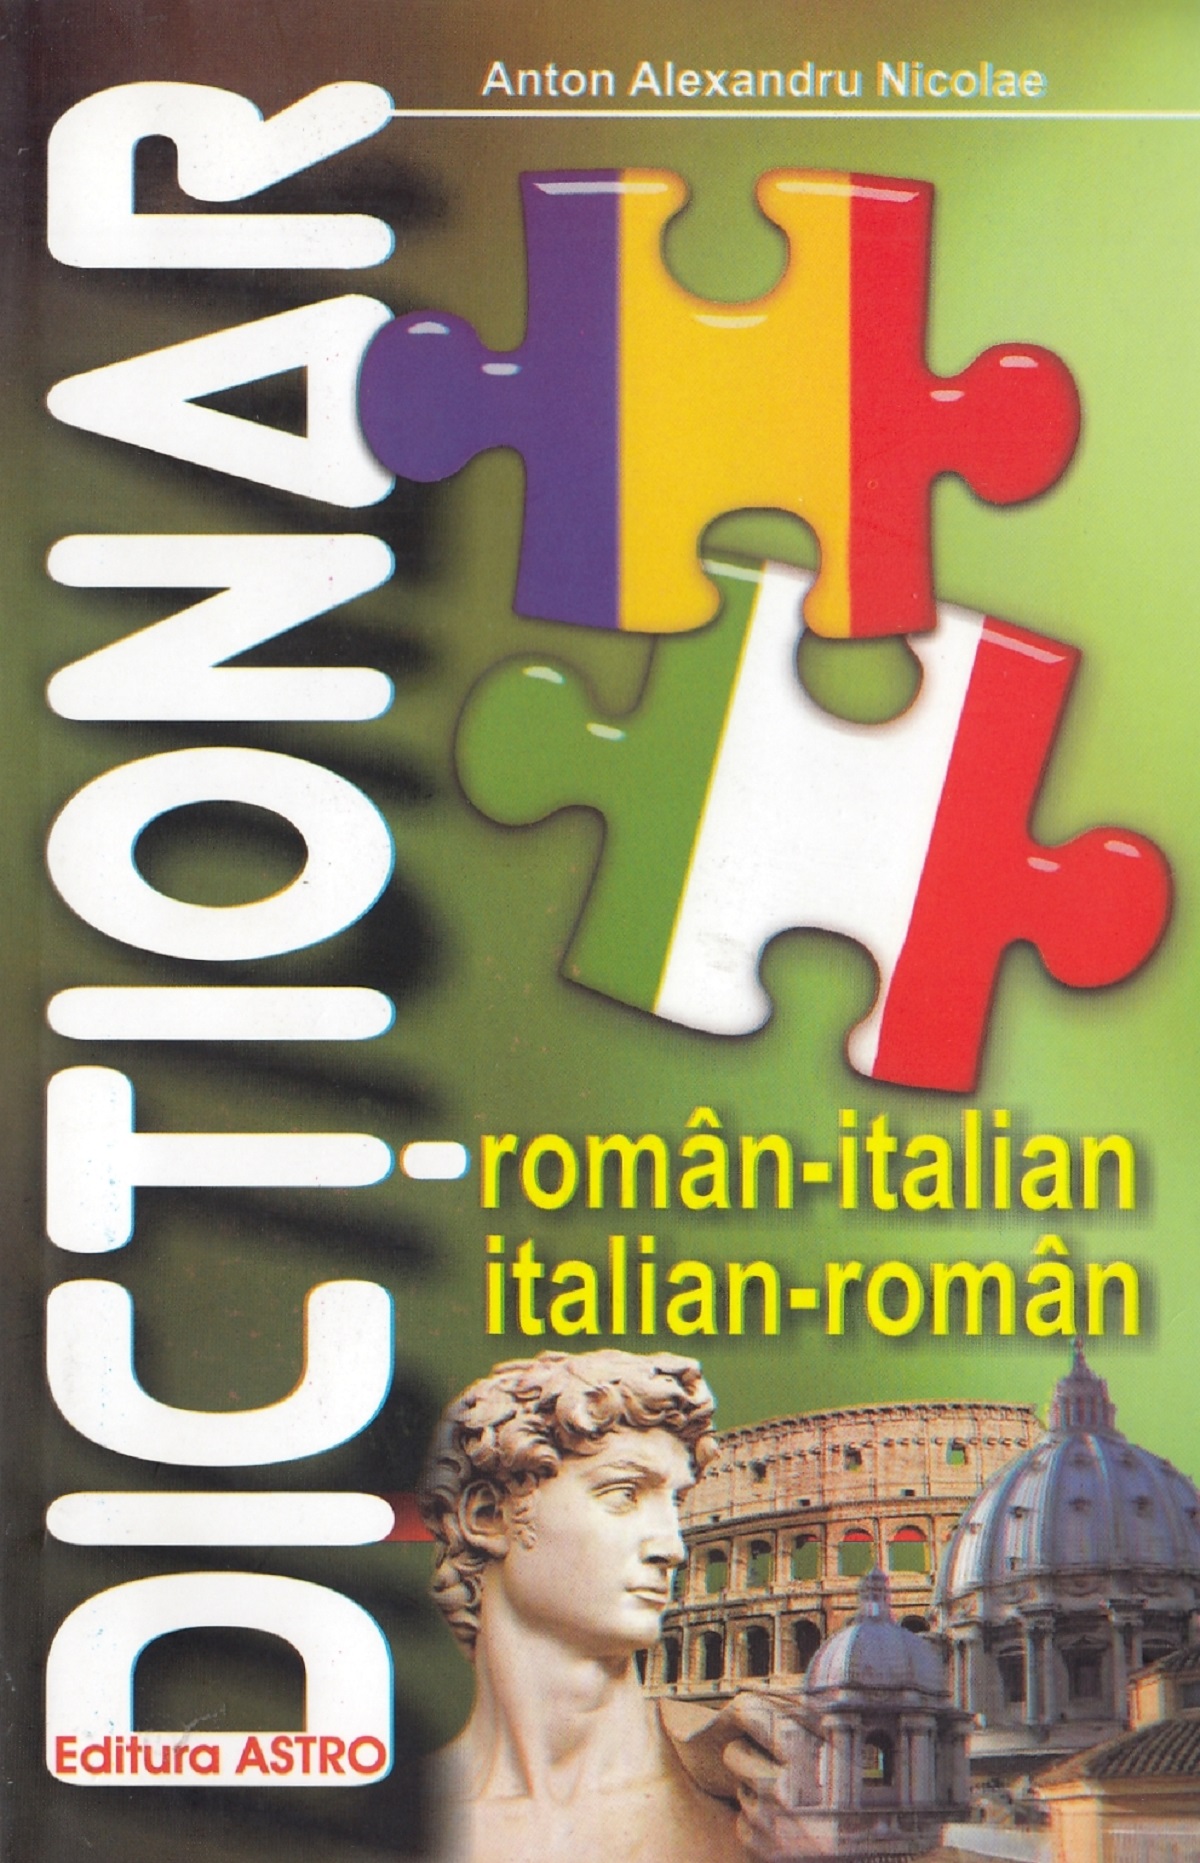 Dictionar roman-italian, italian-roman - Anton Alexandru Nicolae